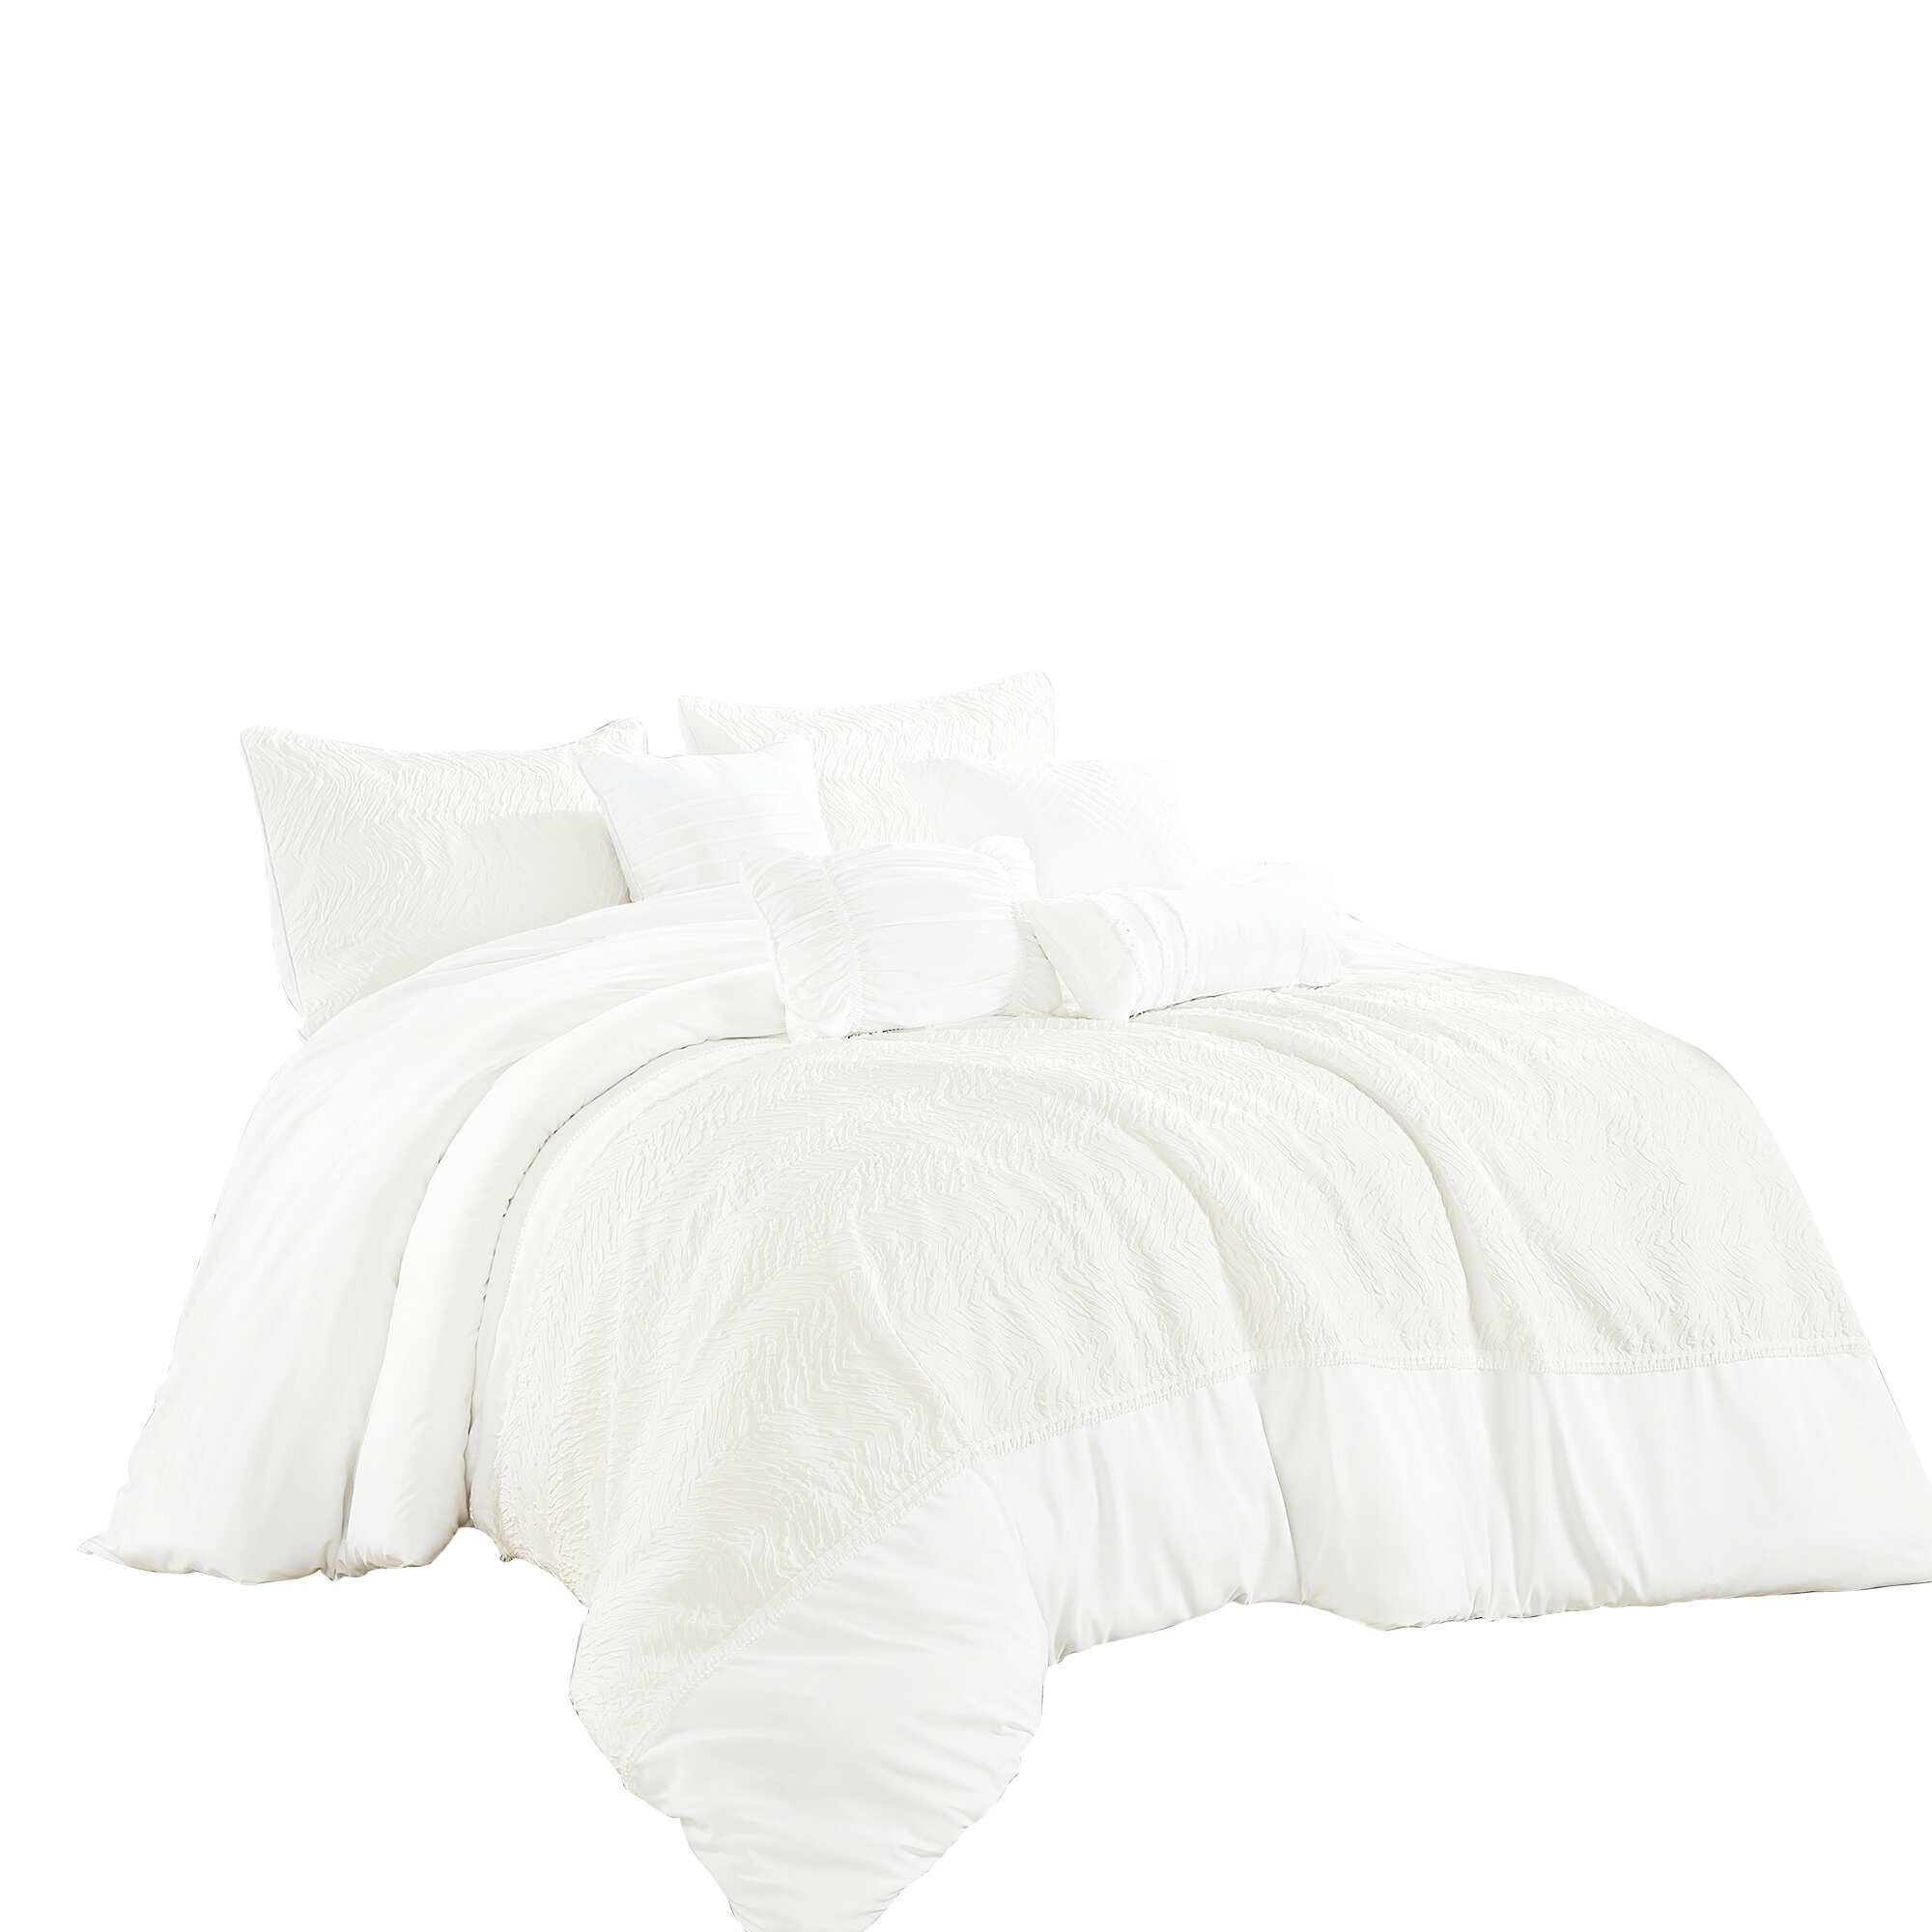 Wellco Bedding Comforter Set Bed In A Bag - 7 Piece Luxury PRIMOLA microfiber Bedding Sets - Oversized Bedroom Comforters - PRIMOLA - Queen